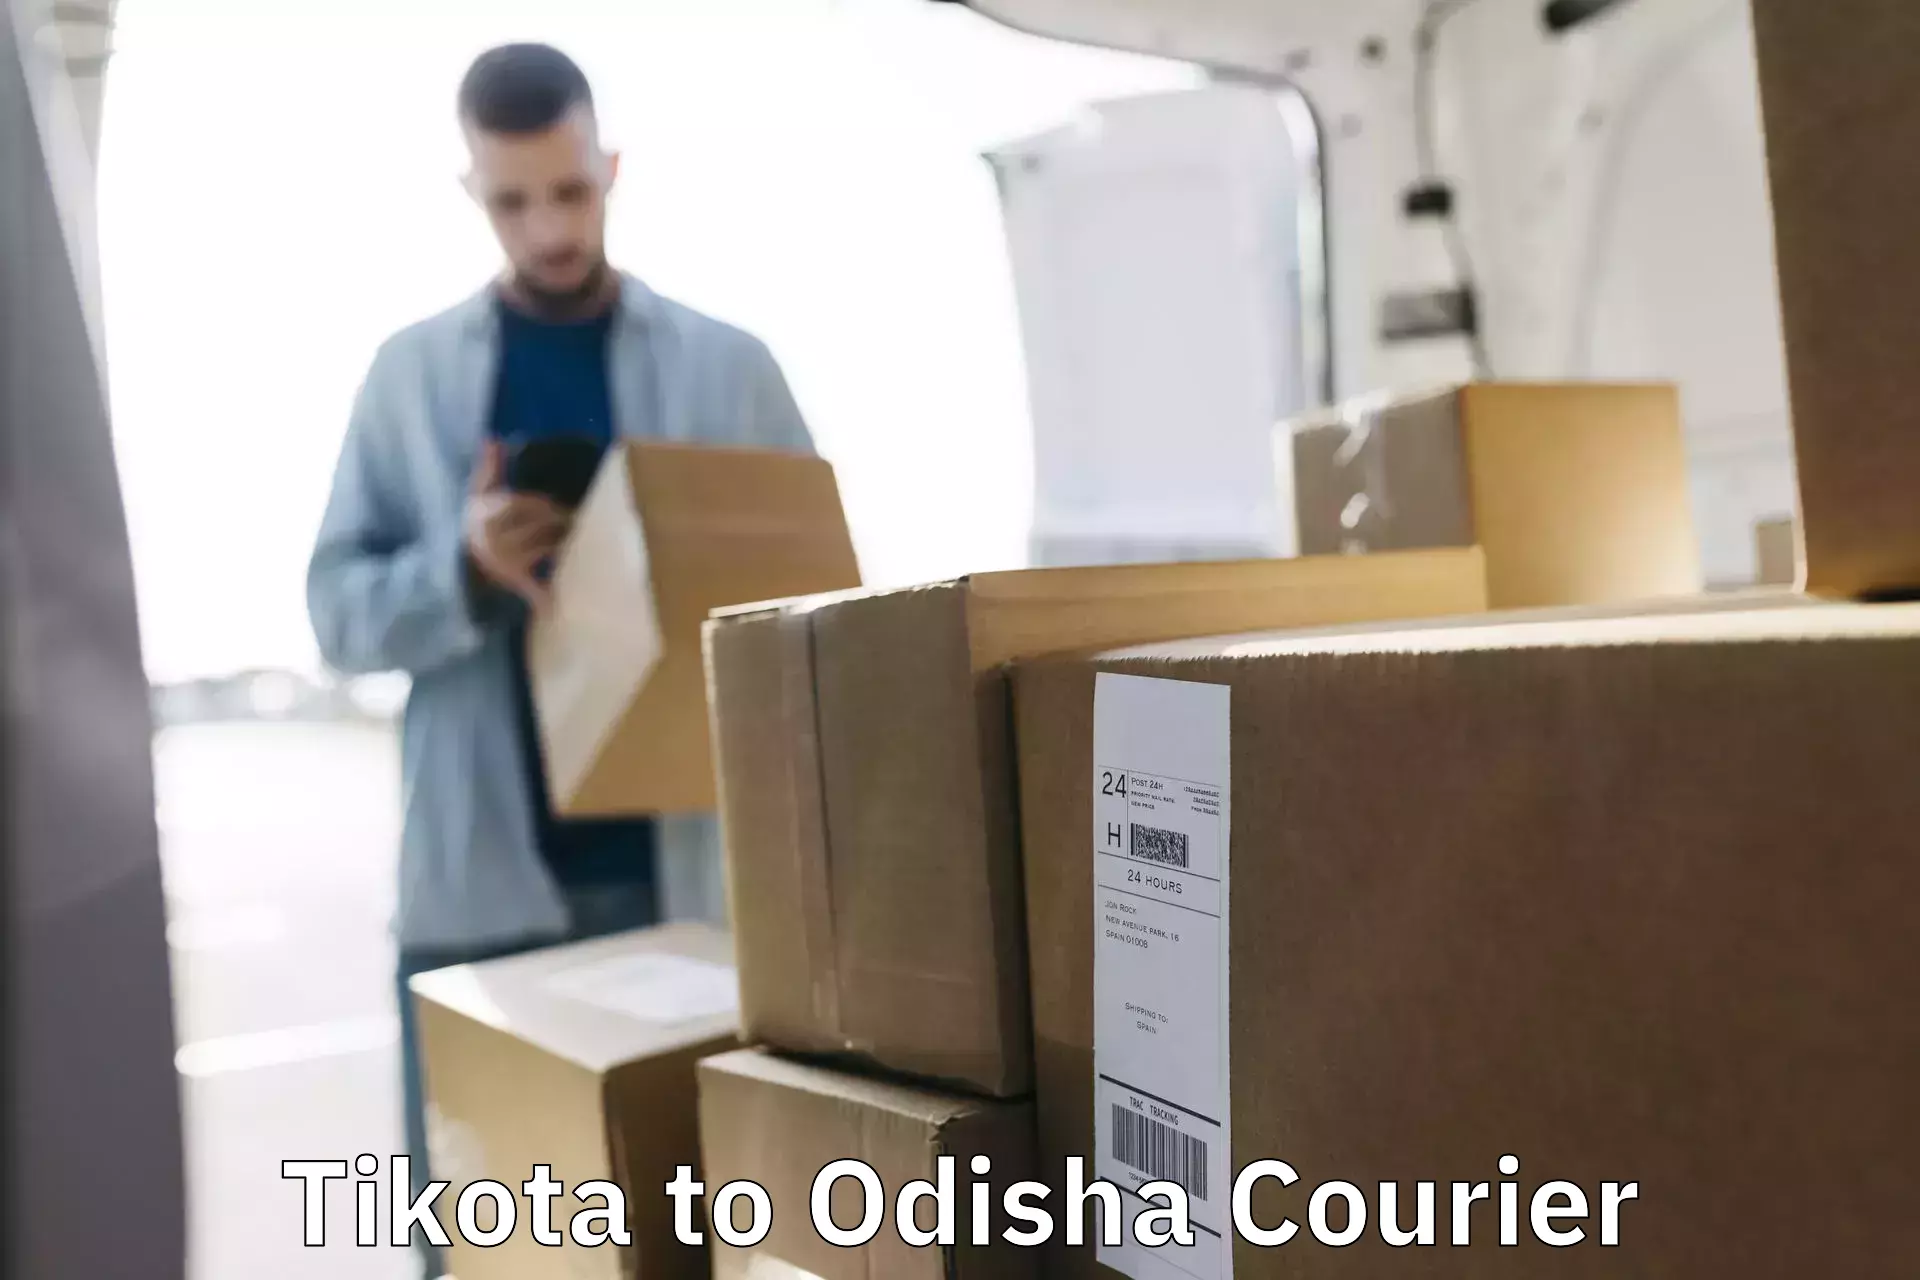 Express courier facilities Tikota to Odisha